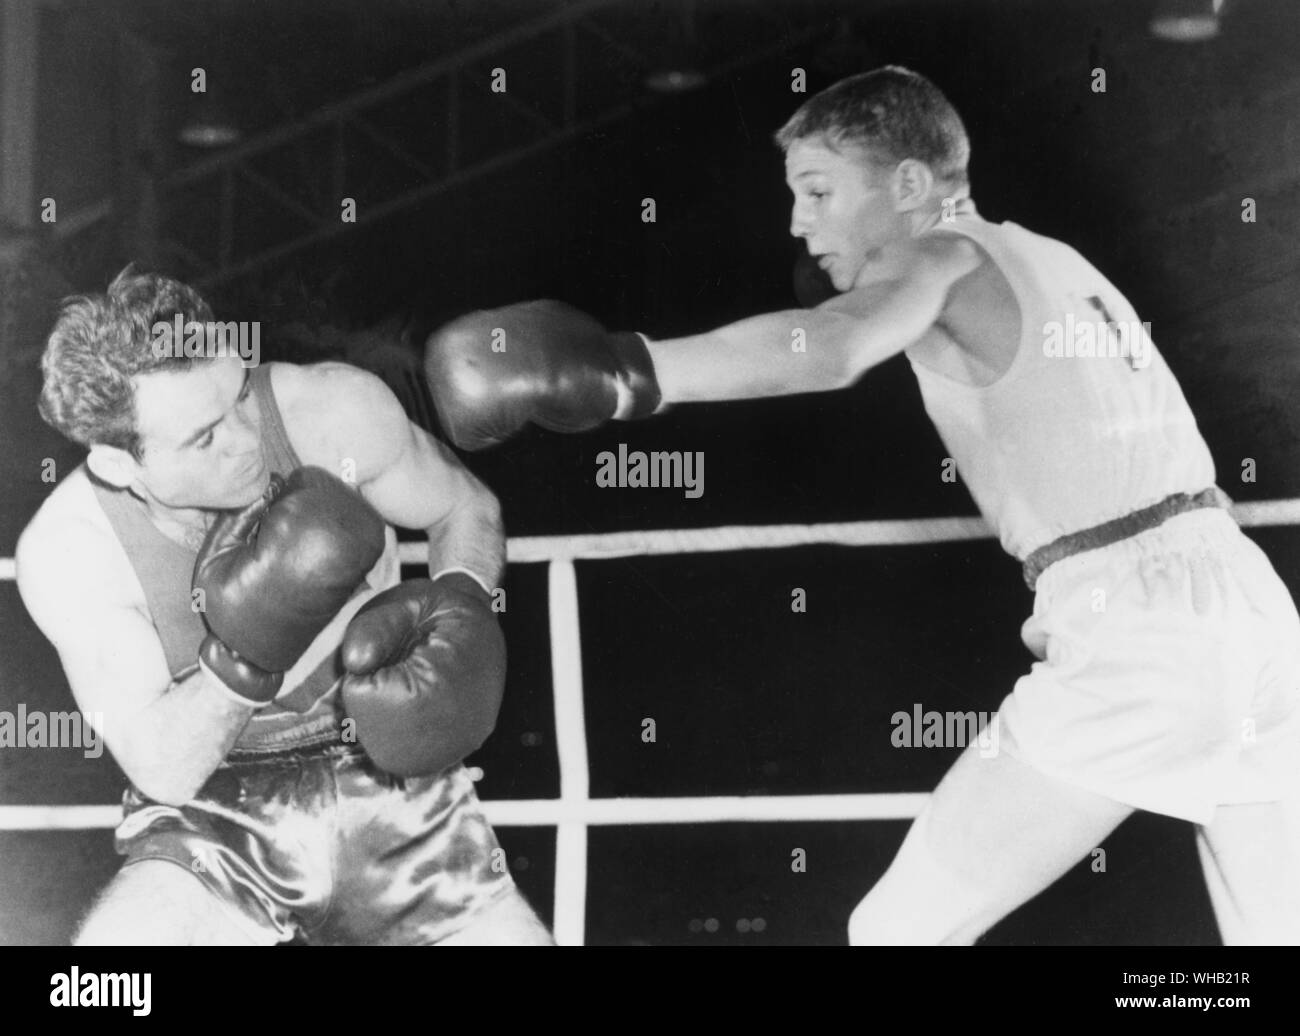 Aus., Melbourne, Olympics, 1956: Terry Spinks, 18 Jahre alten Londoner, führt mit einer linken zu Mircea Dobrescu in Rumänien während ihrer Fliegengewicht Finale. Spinks gewann die Goldmedaille. Stockfoto